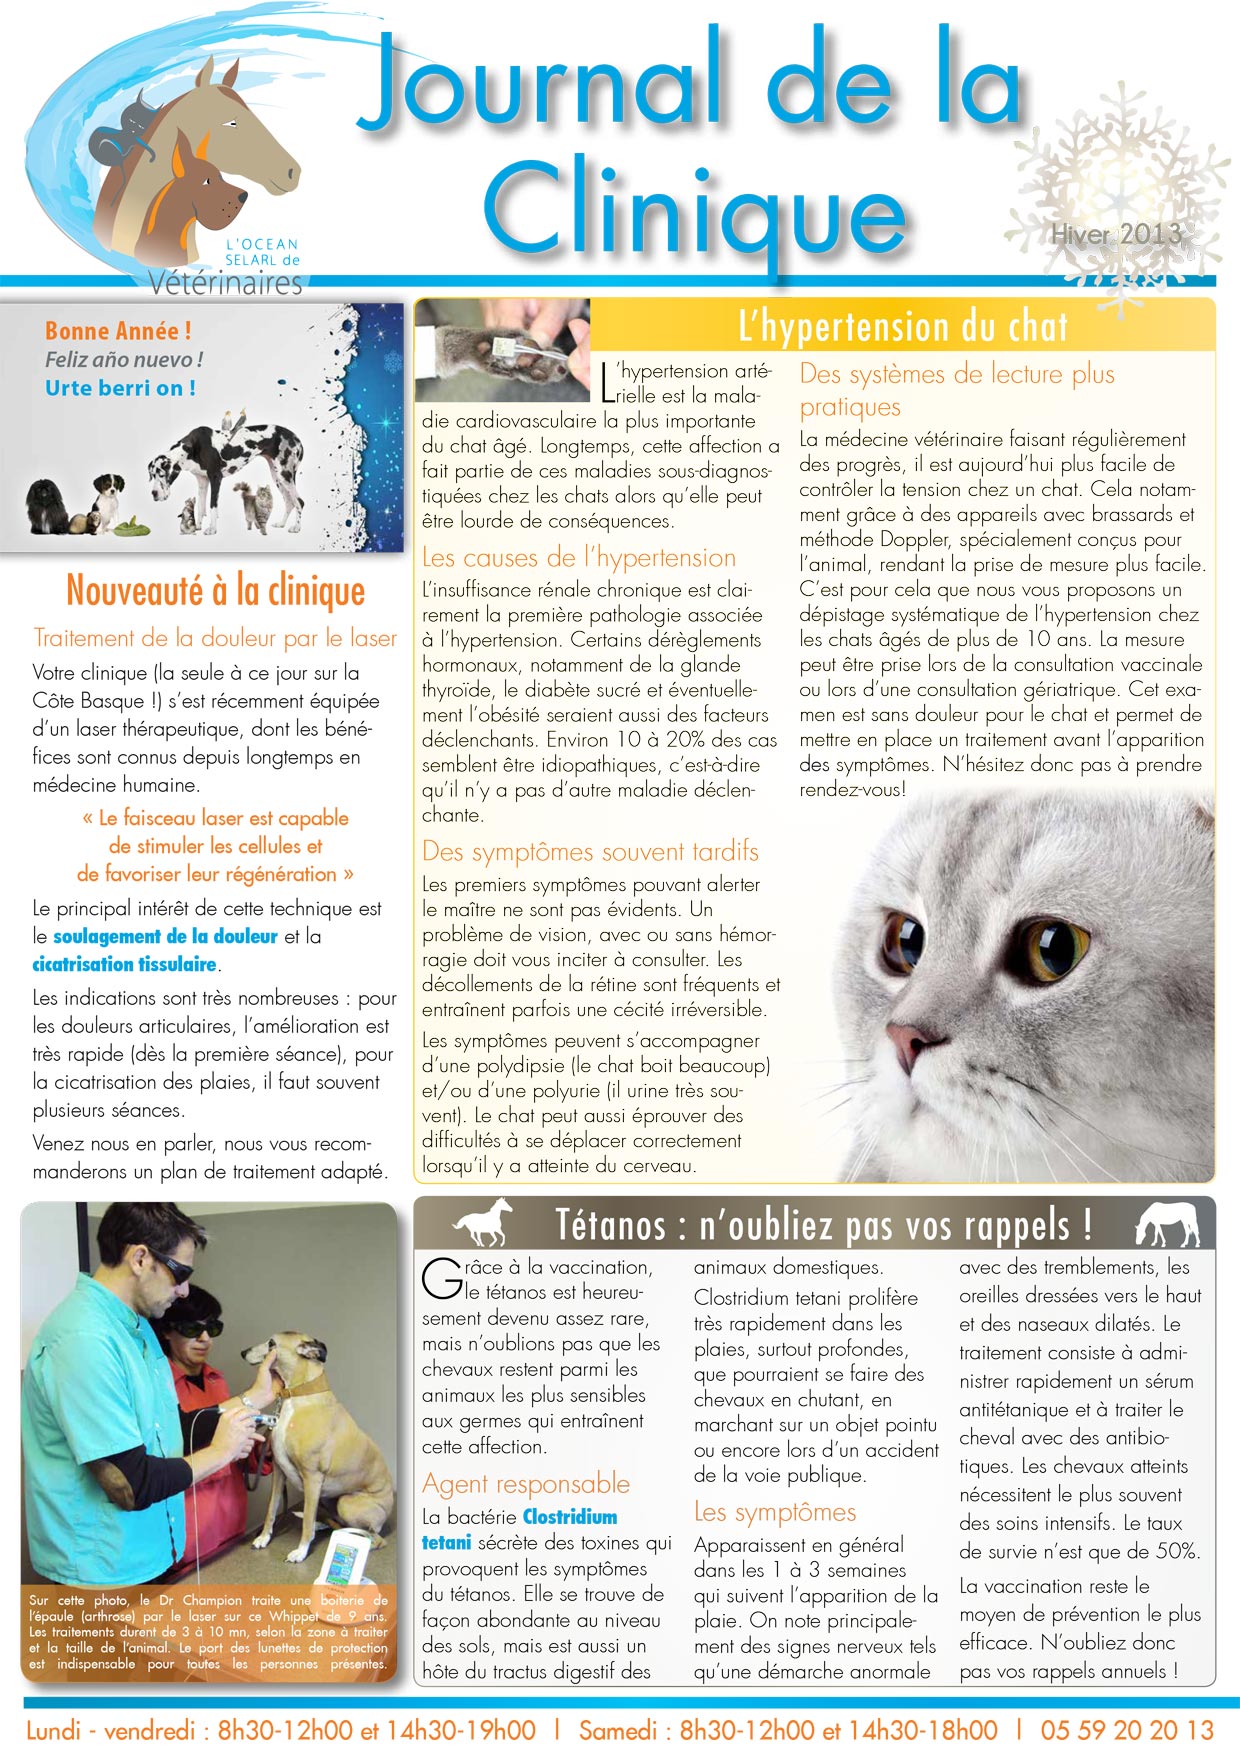 Le Journal de la Clinique - Hiver 2013-14 page 1